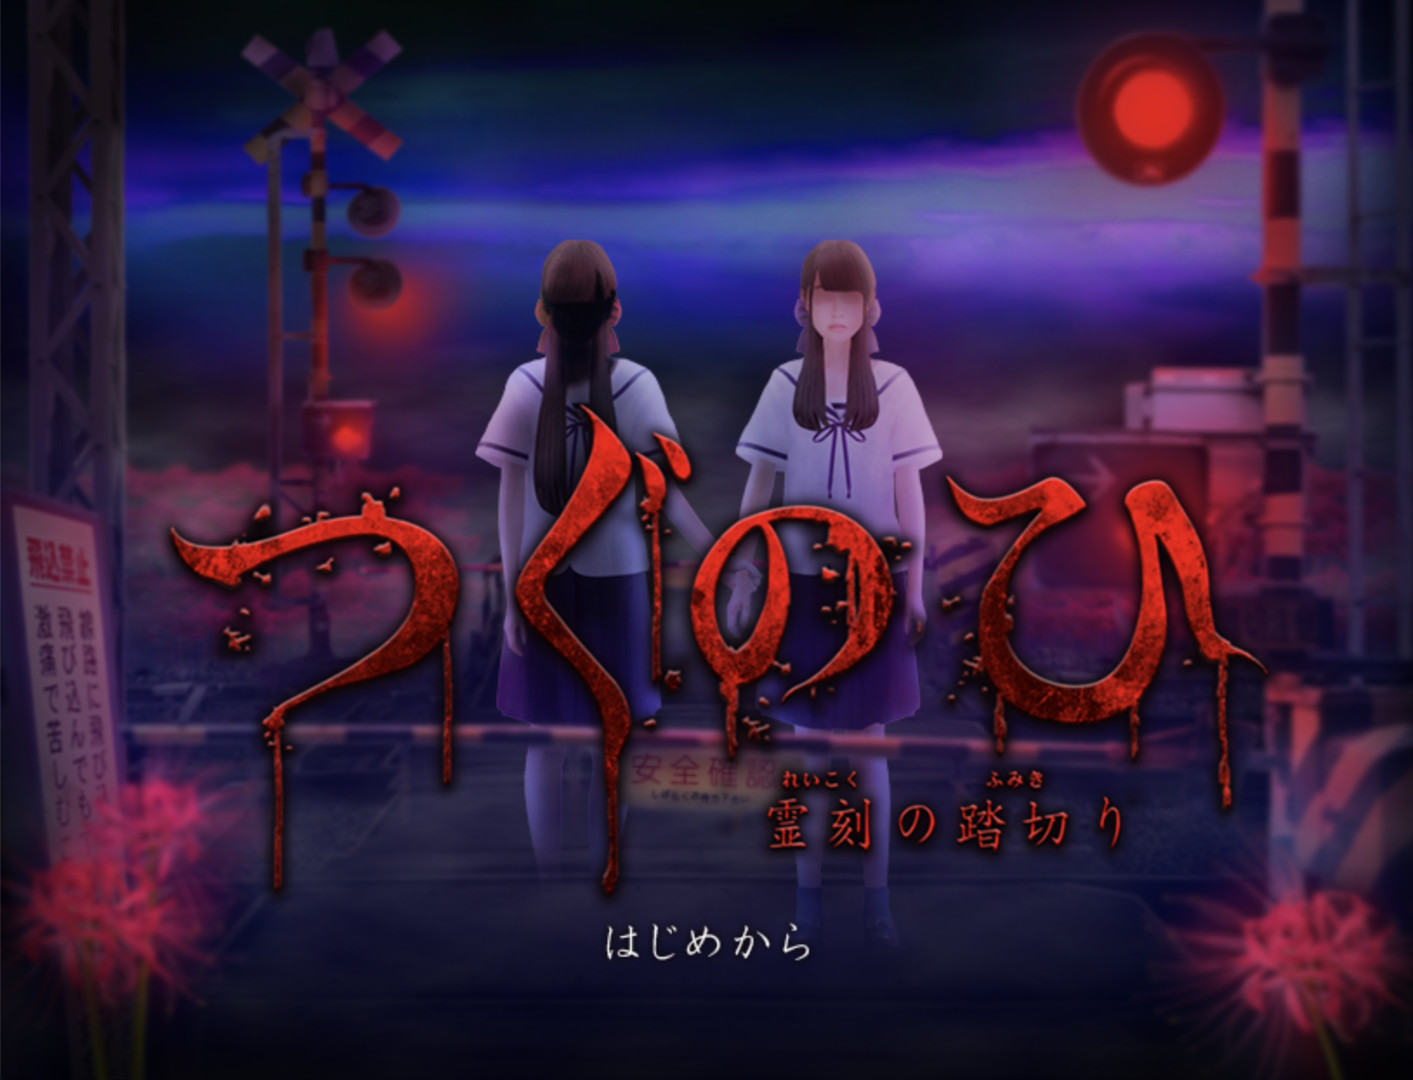 超恐怖游戏《Tsugunohi翌日》8月13日正式发售展示